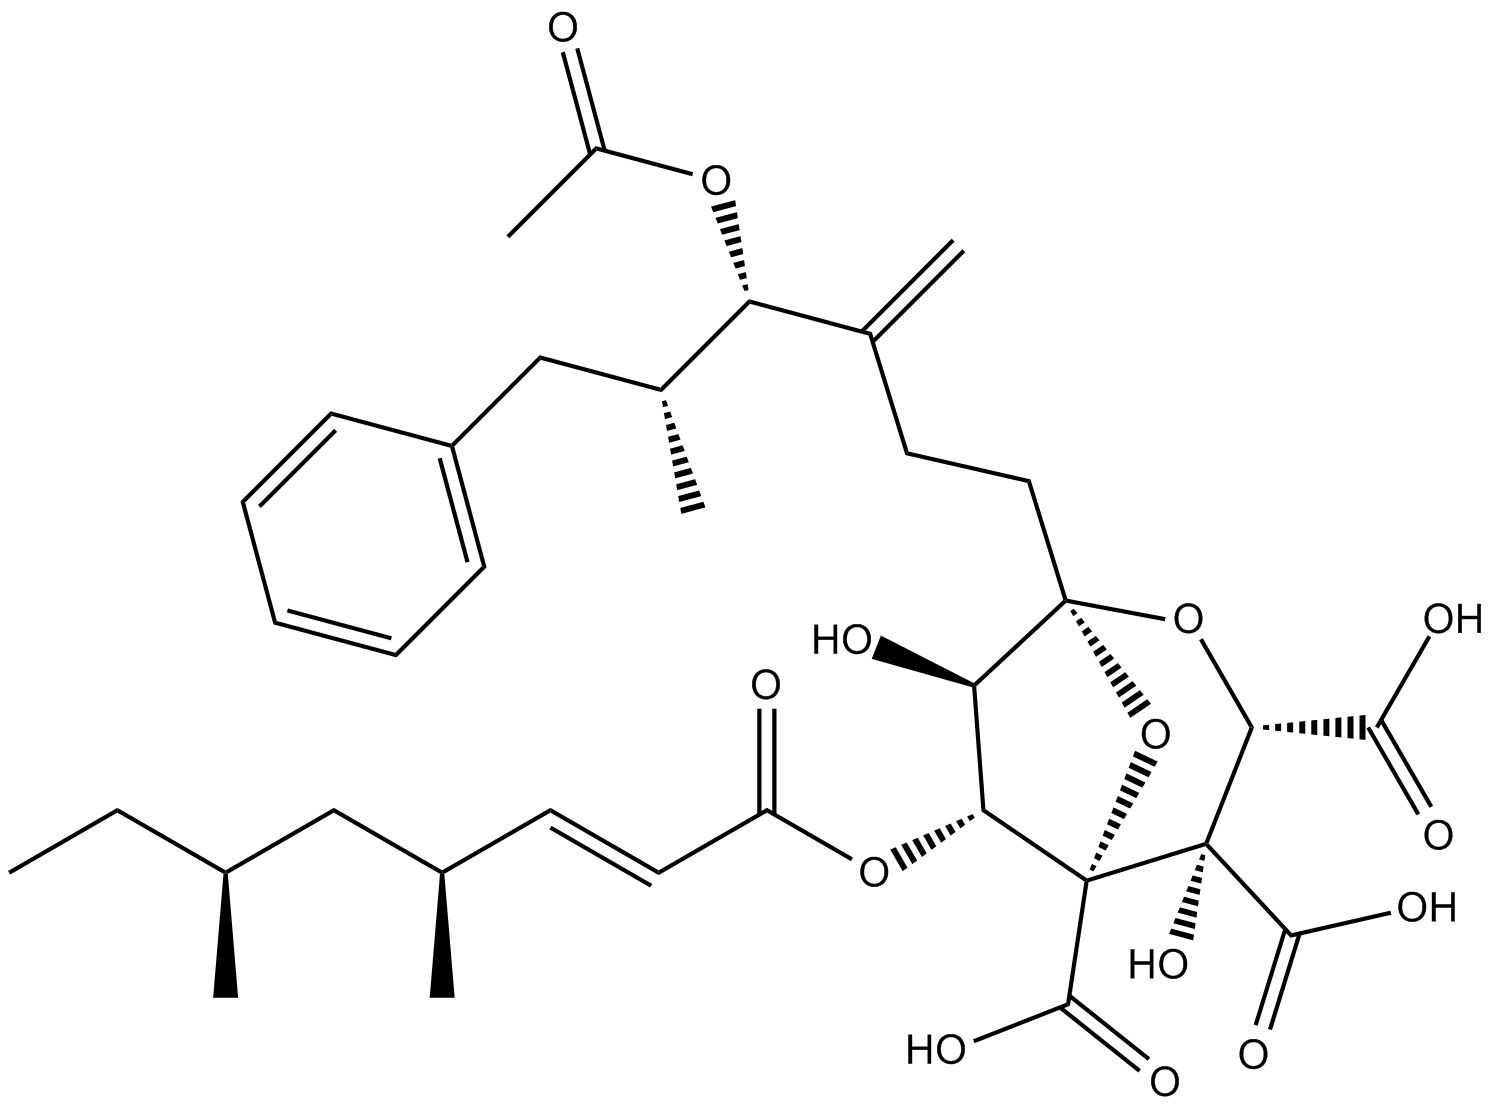 Zaragozic Acid A